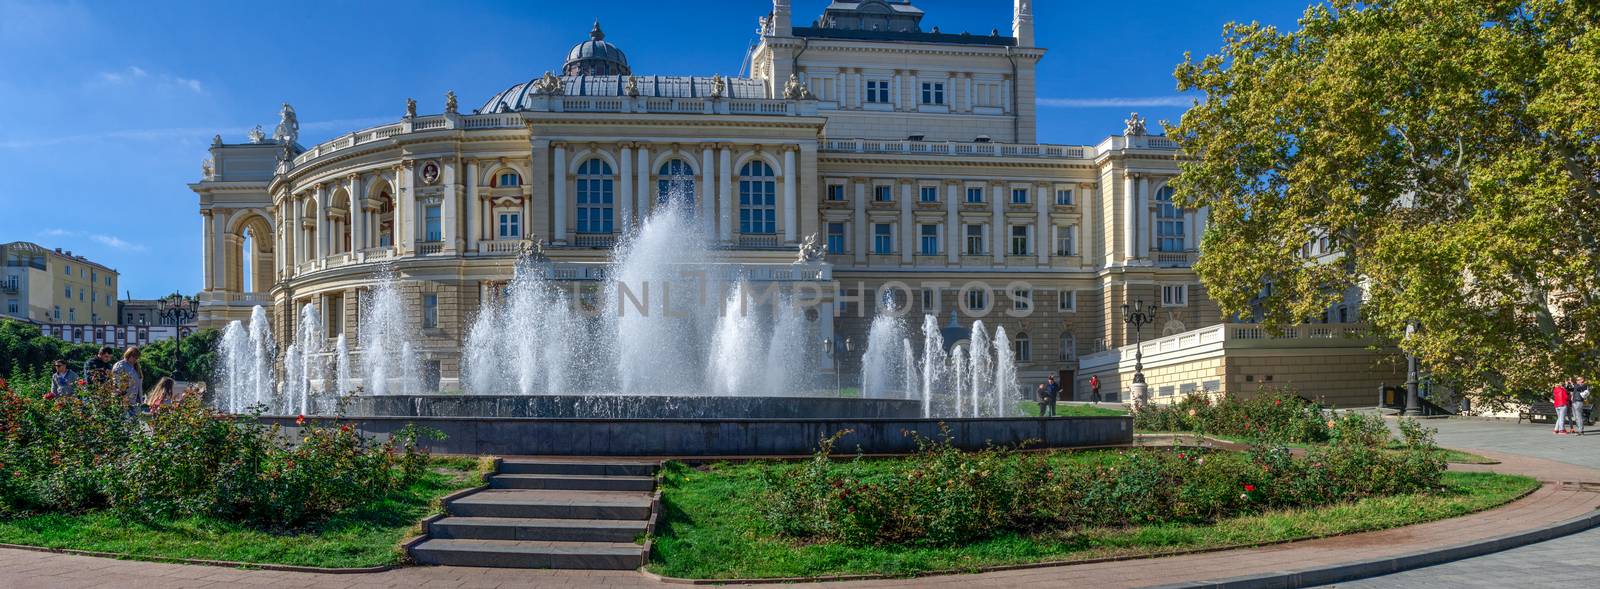 Fountain on Theater Square in Odessa, Ukraine by Multipedia